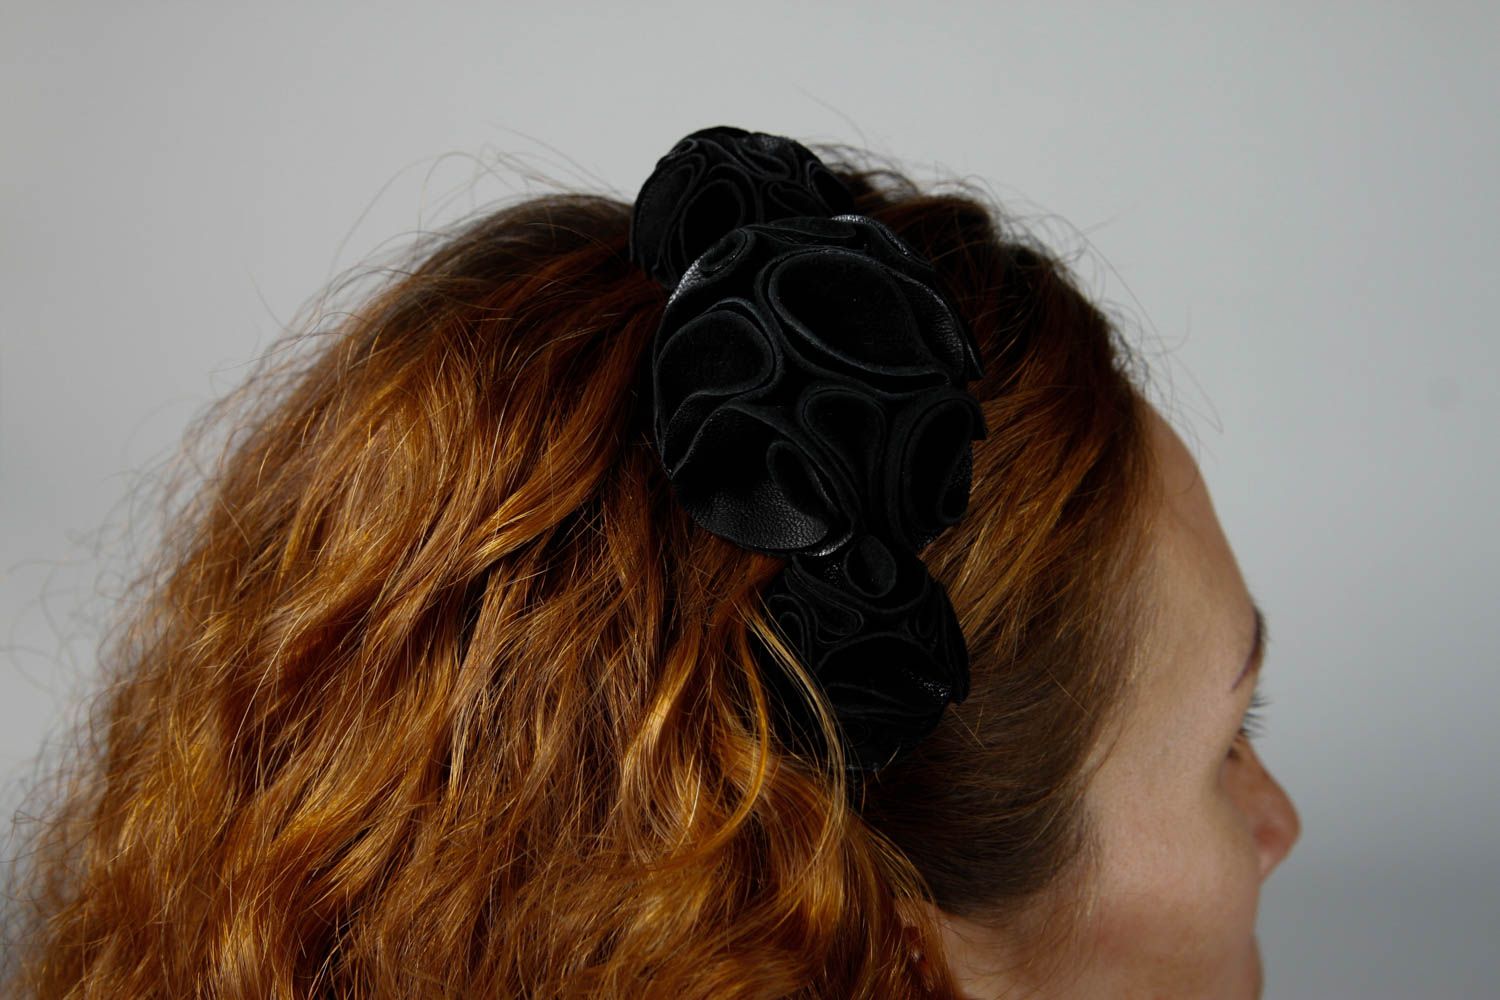 Аксессуар для волос ручной работы обруч на голову черный женский аксессуар фото 2